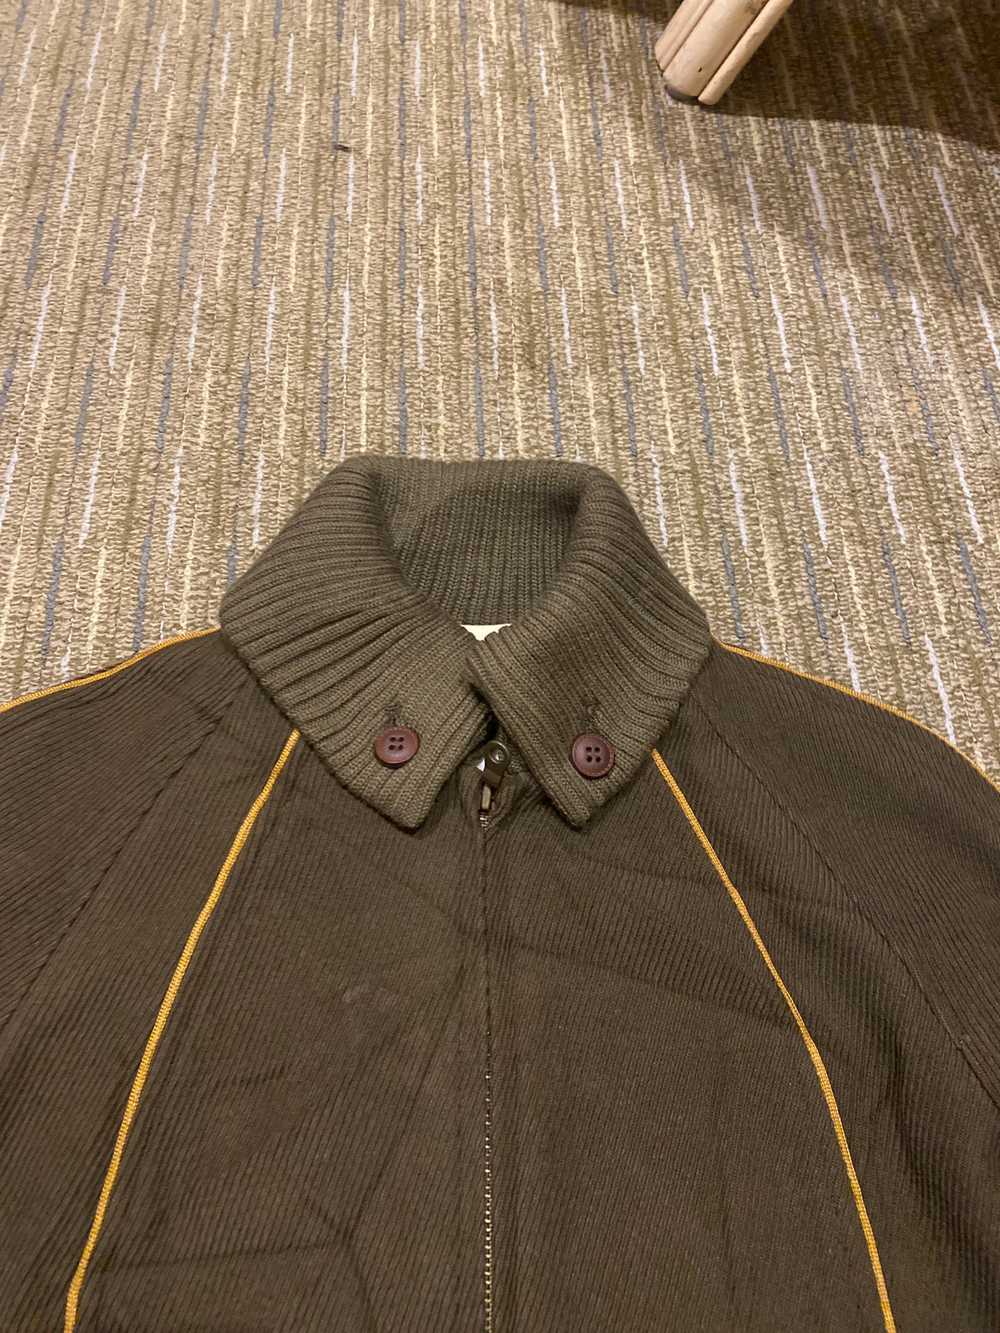 Japanese Brand - Vintage Relacher Coat Jacket Jap… - image 2